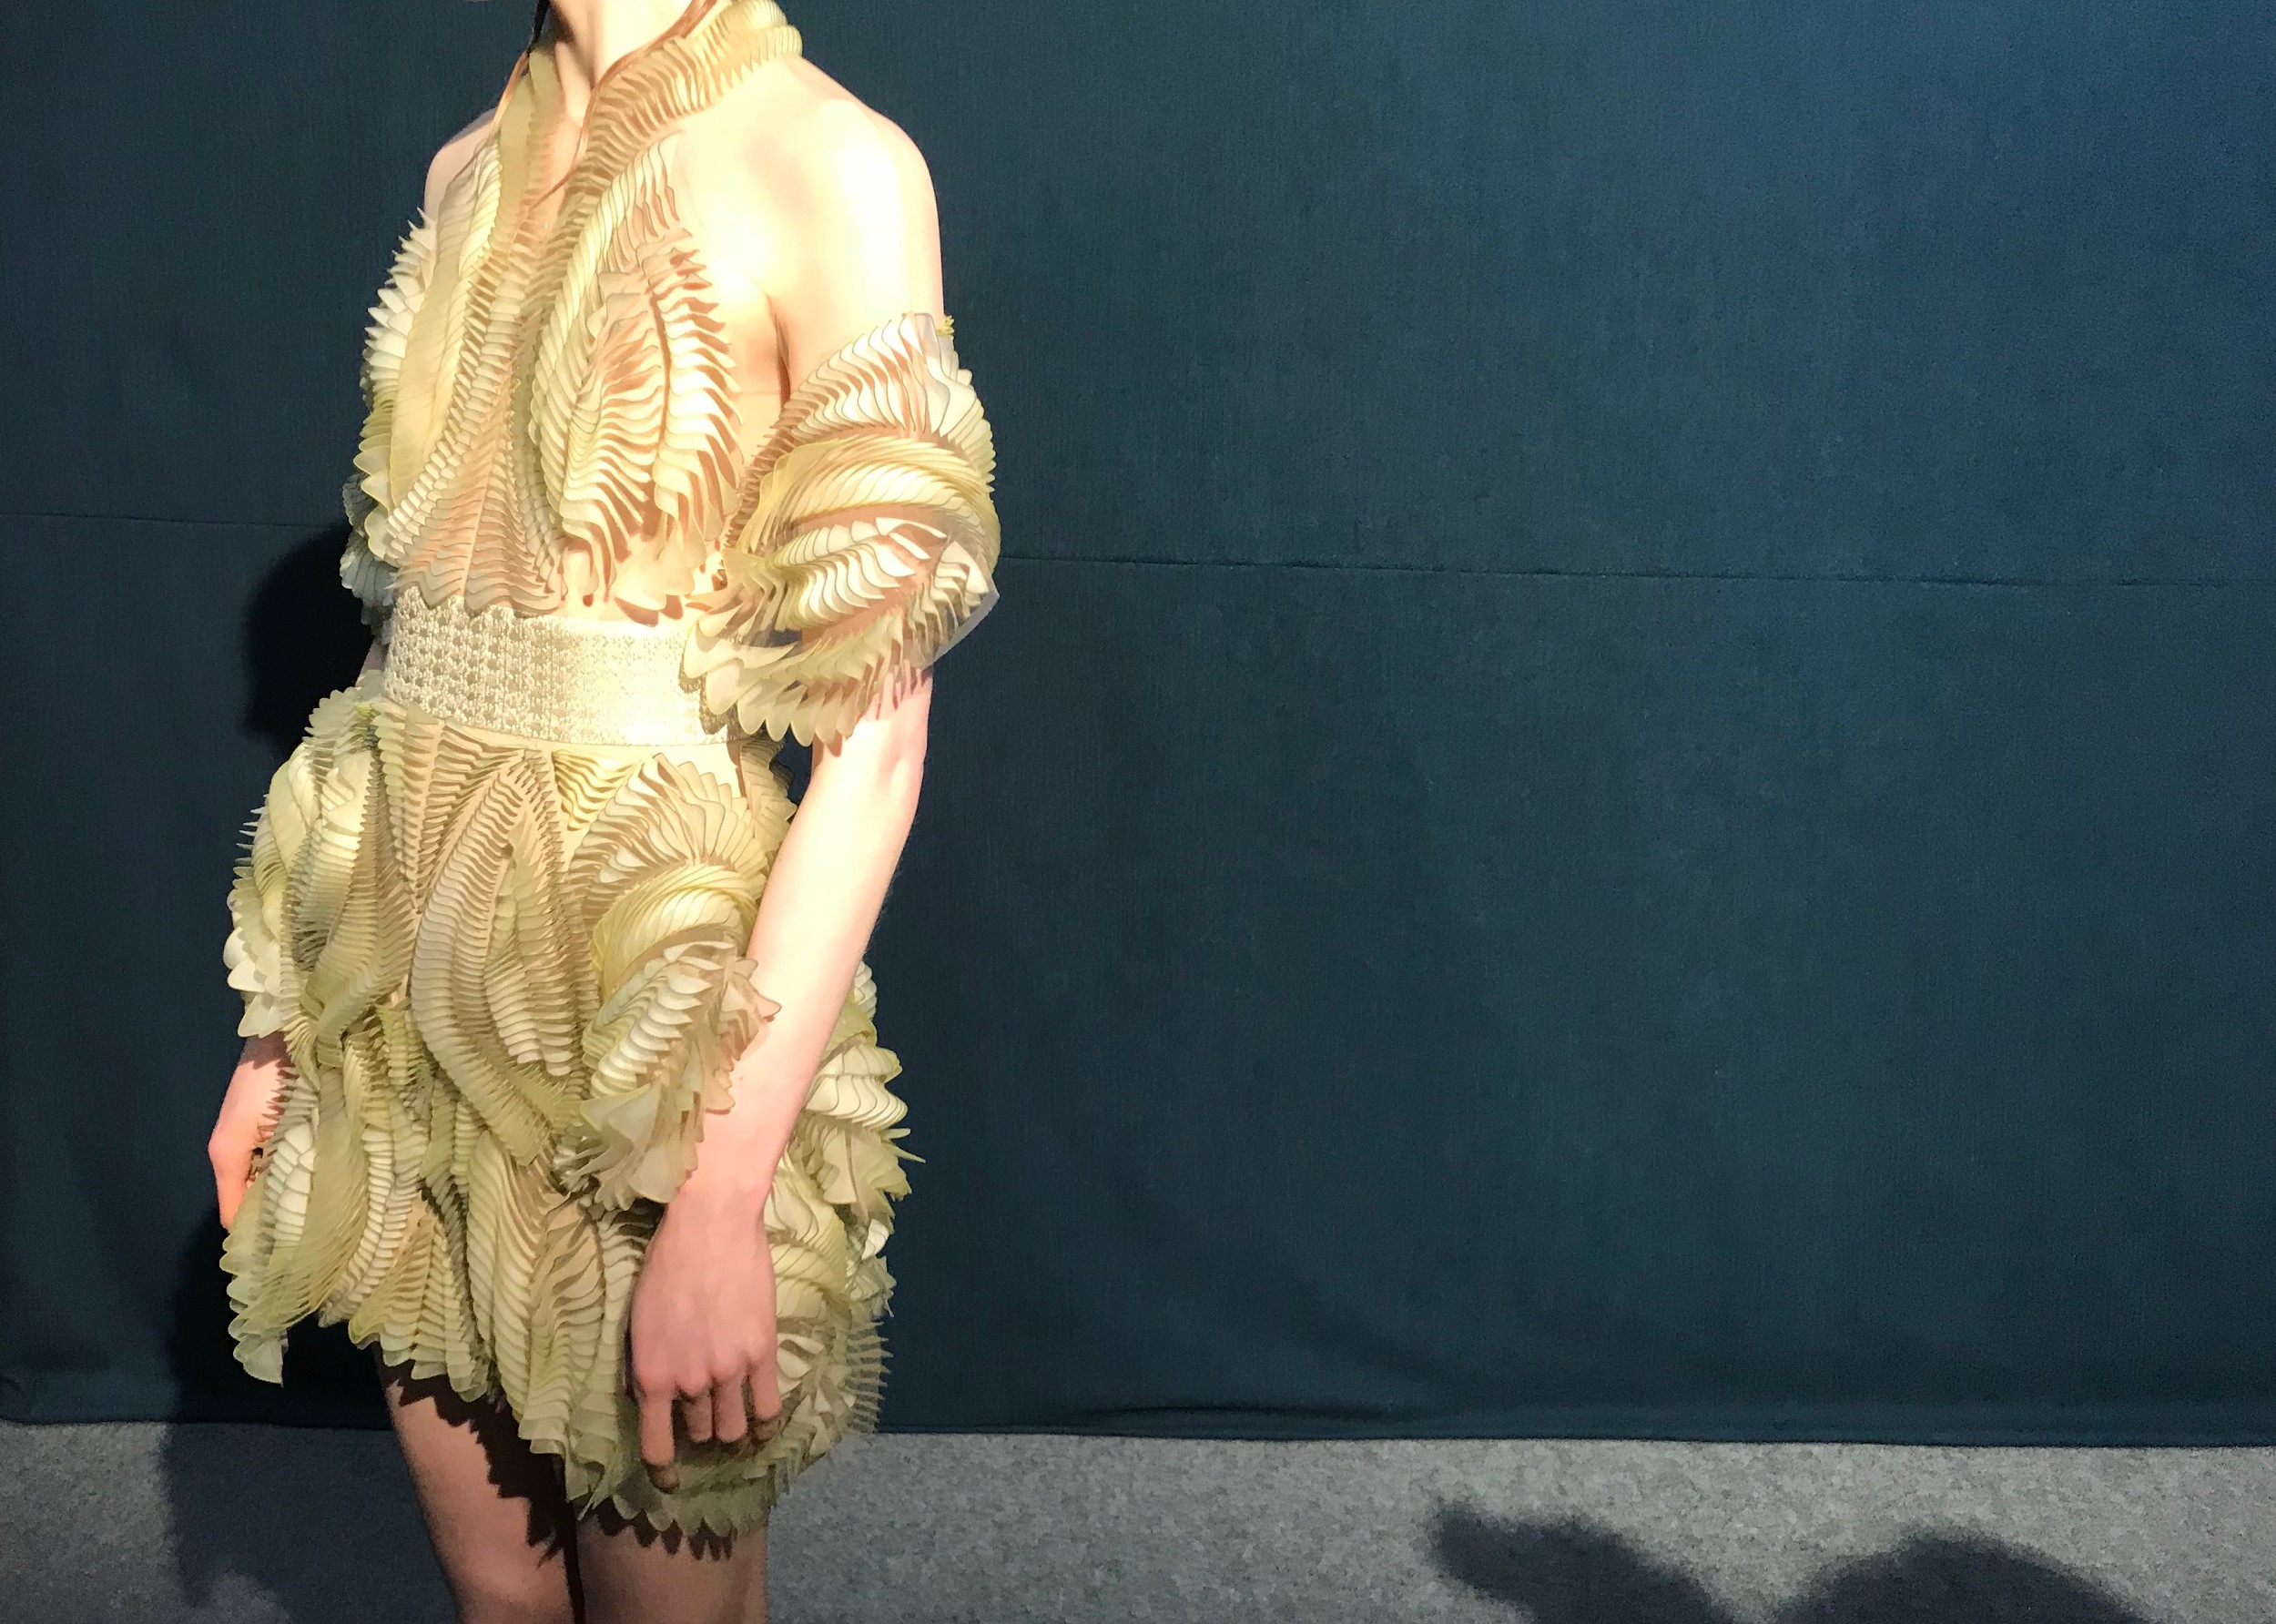 3D printed dress by Iris Van Herpen at Paris Fashion Week